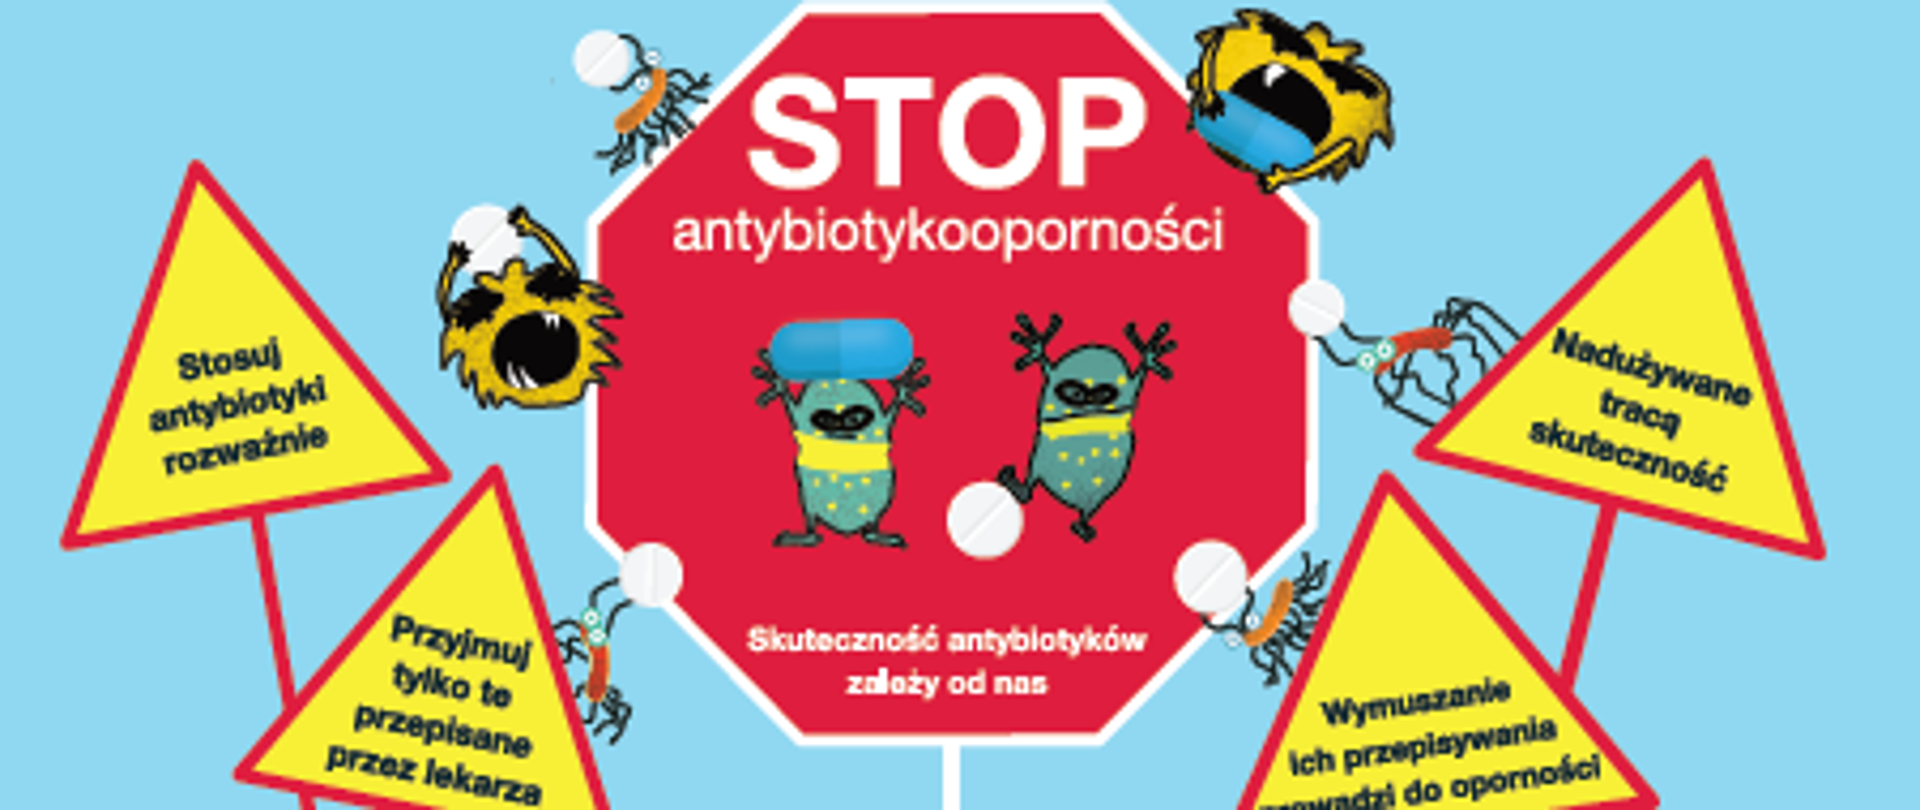 Plakat "Stop antybiotykooporności"